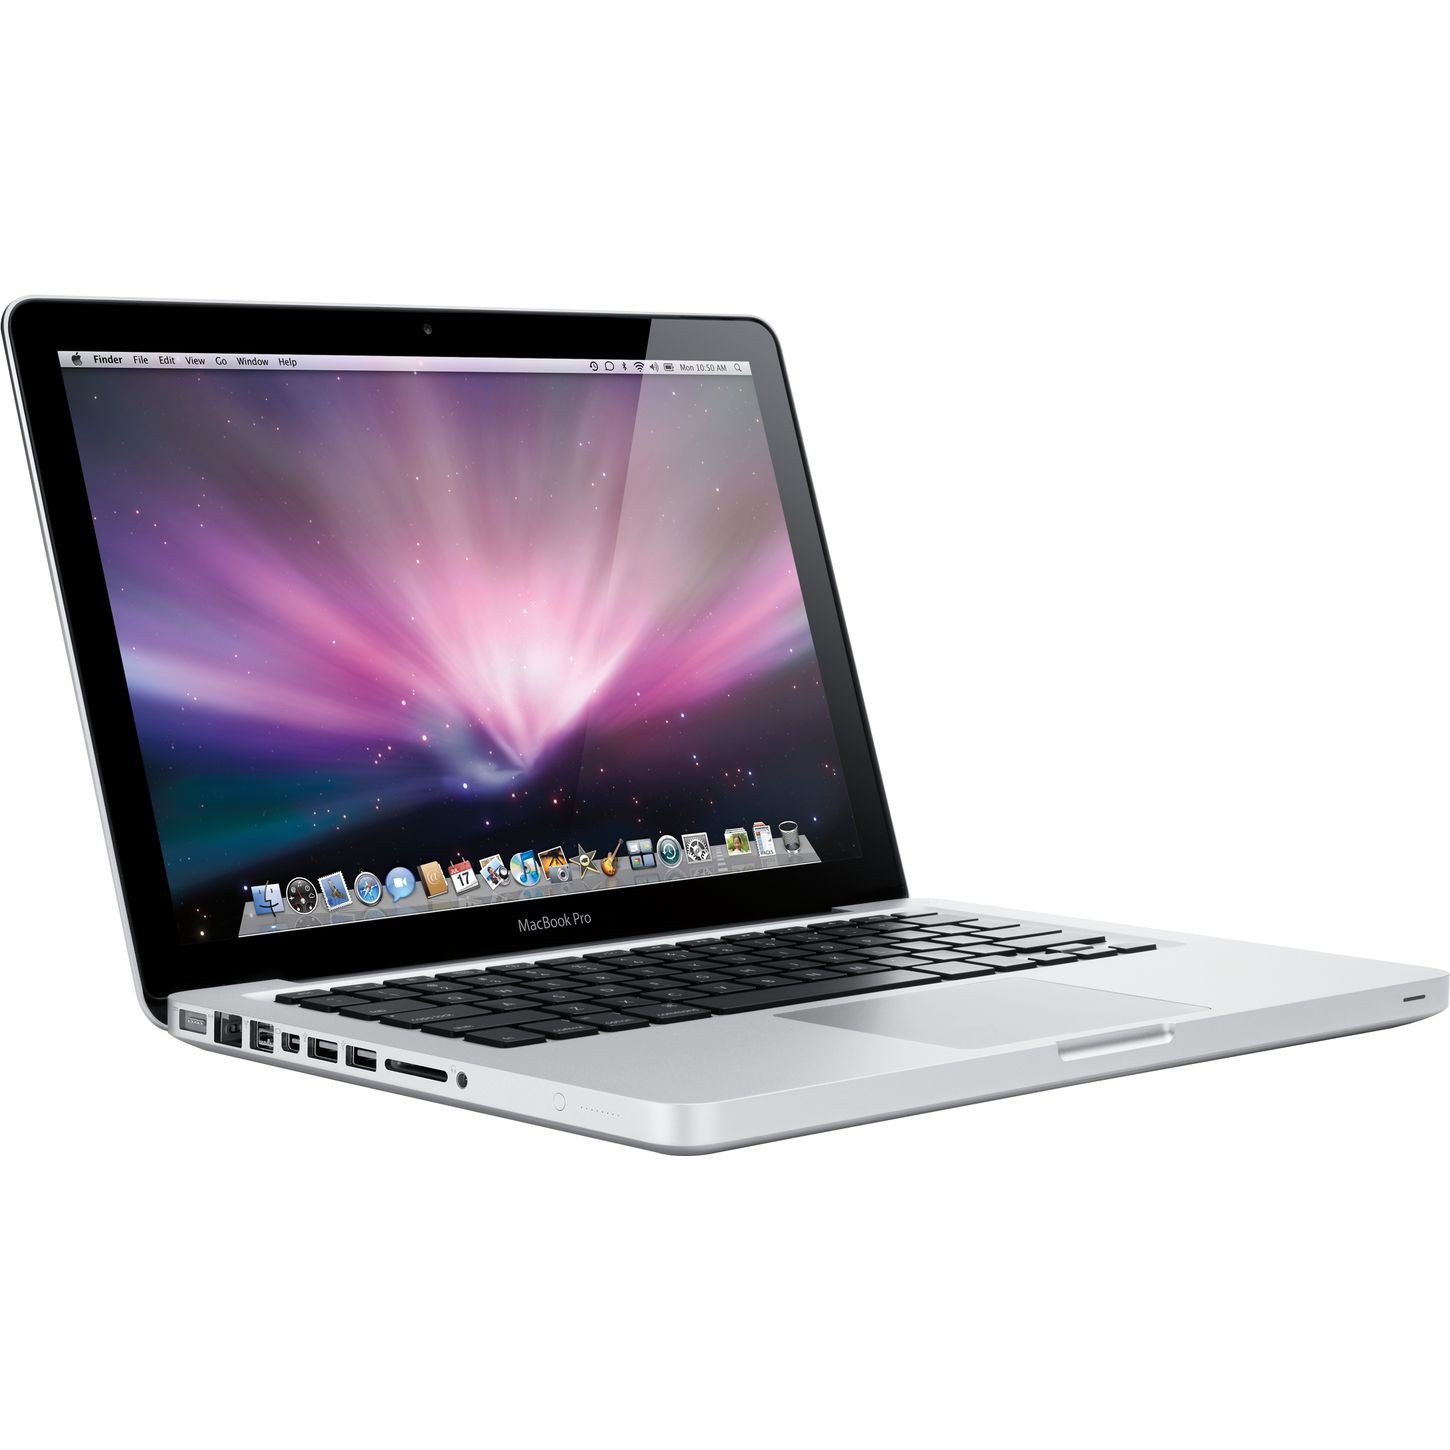 macbook pro model a1278